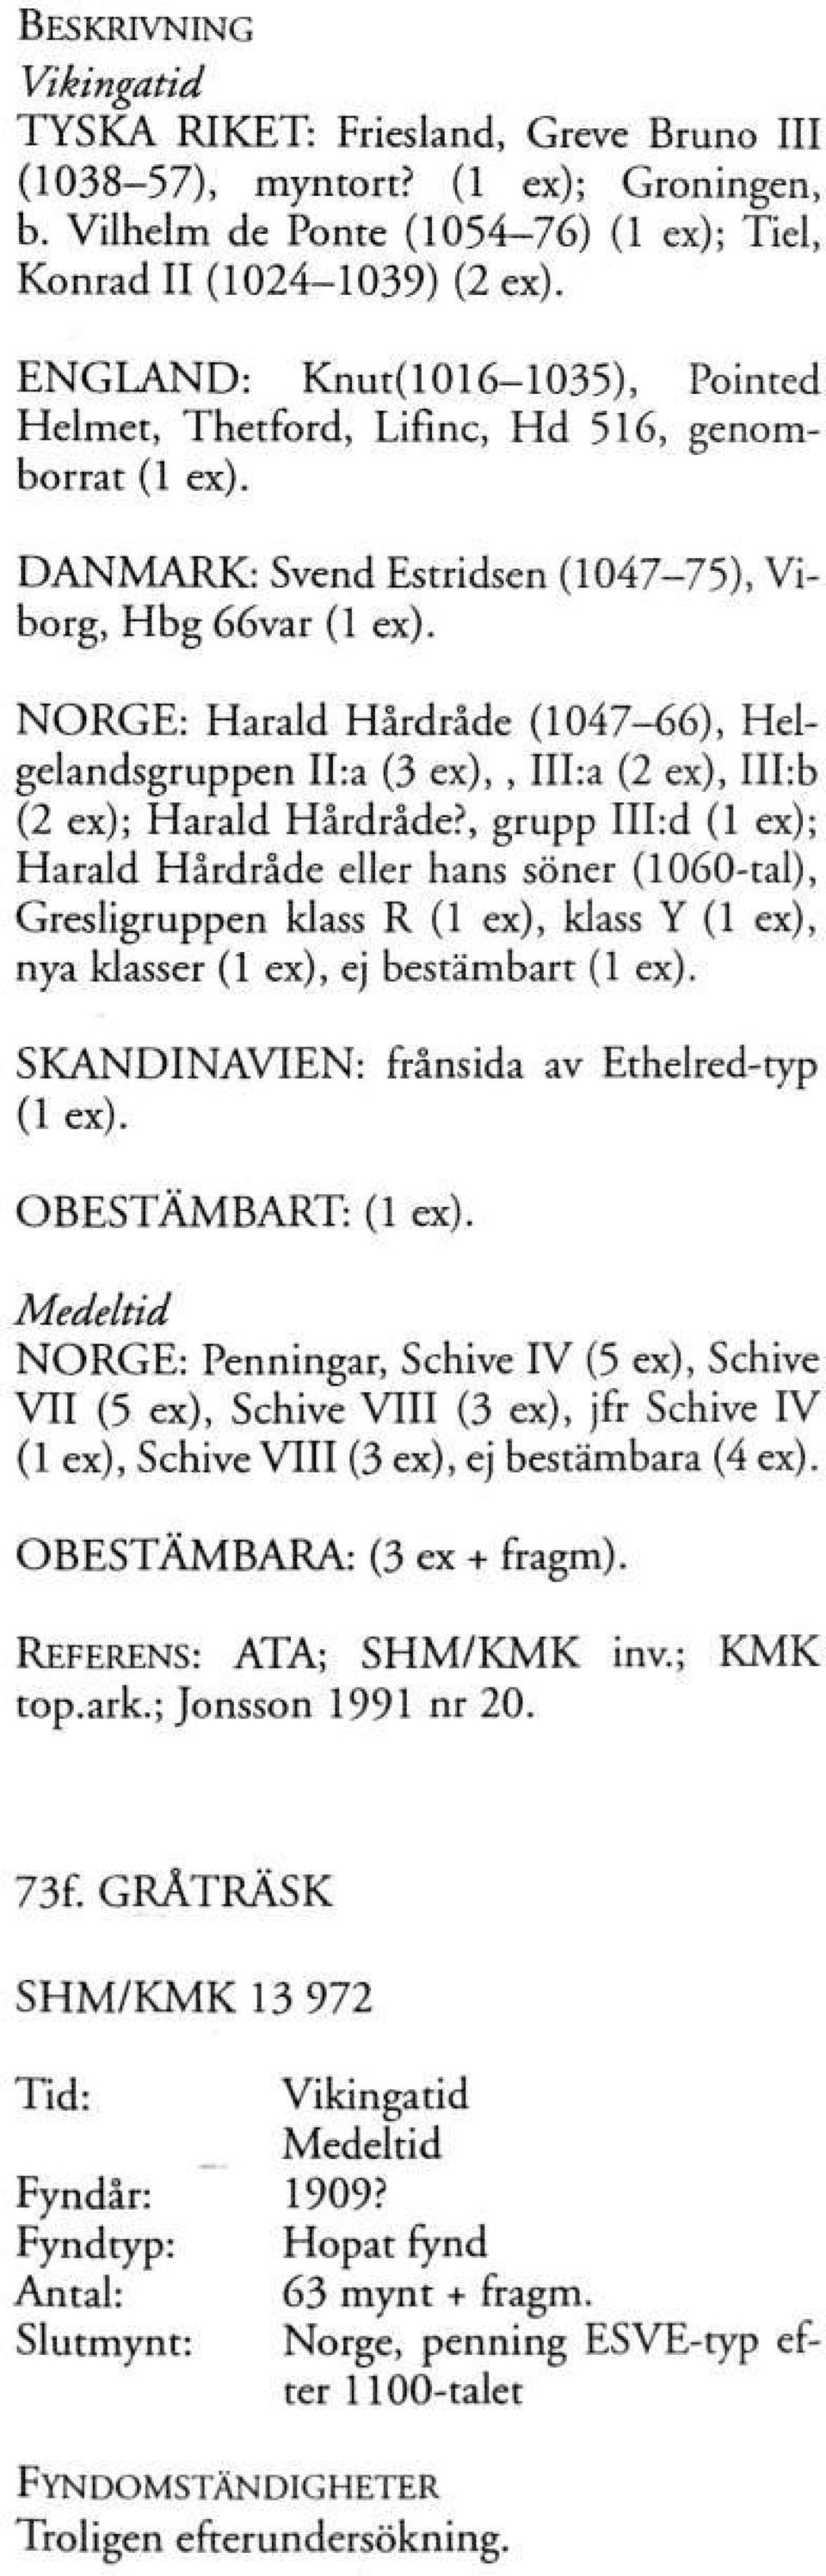 NORGE: Harald Hårdråde (1047-66), Helgelandsgruppen II:a (3 ex),, III:a (2 ex), III:b (2 ex); Harald Hårdråde?